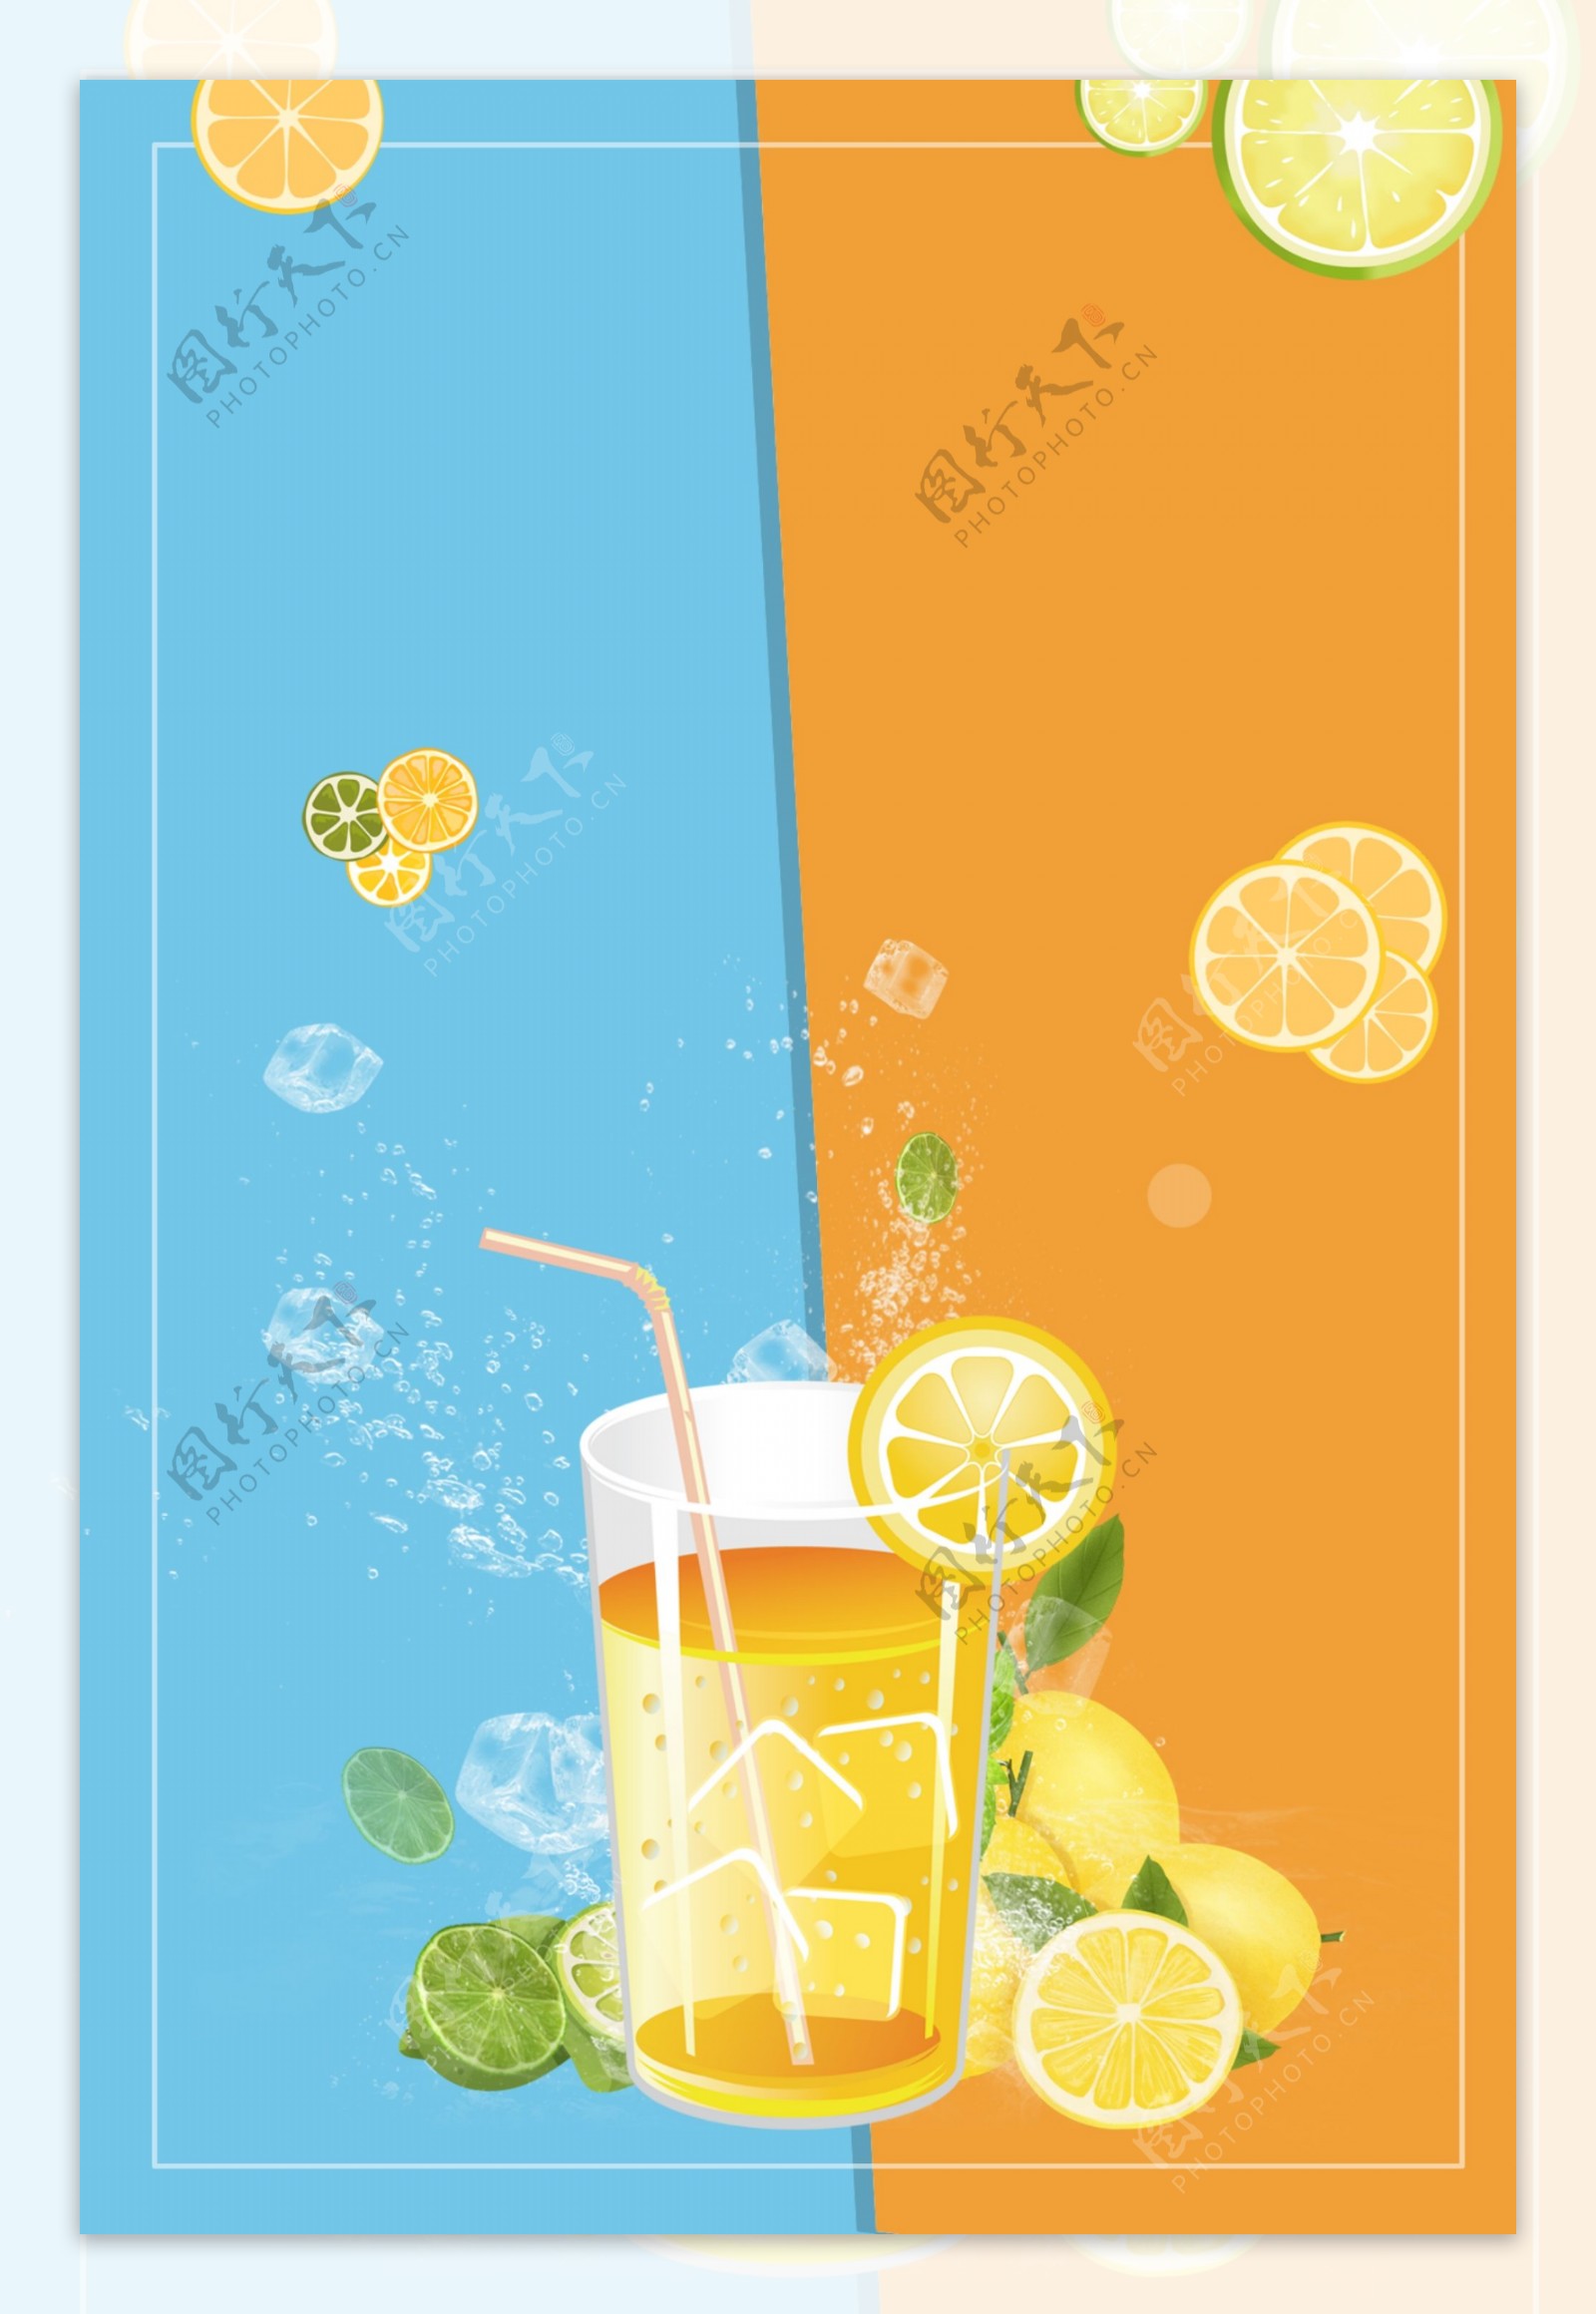 冰镇柠檬水夏日酷饮海报背景素材